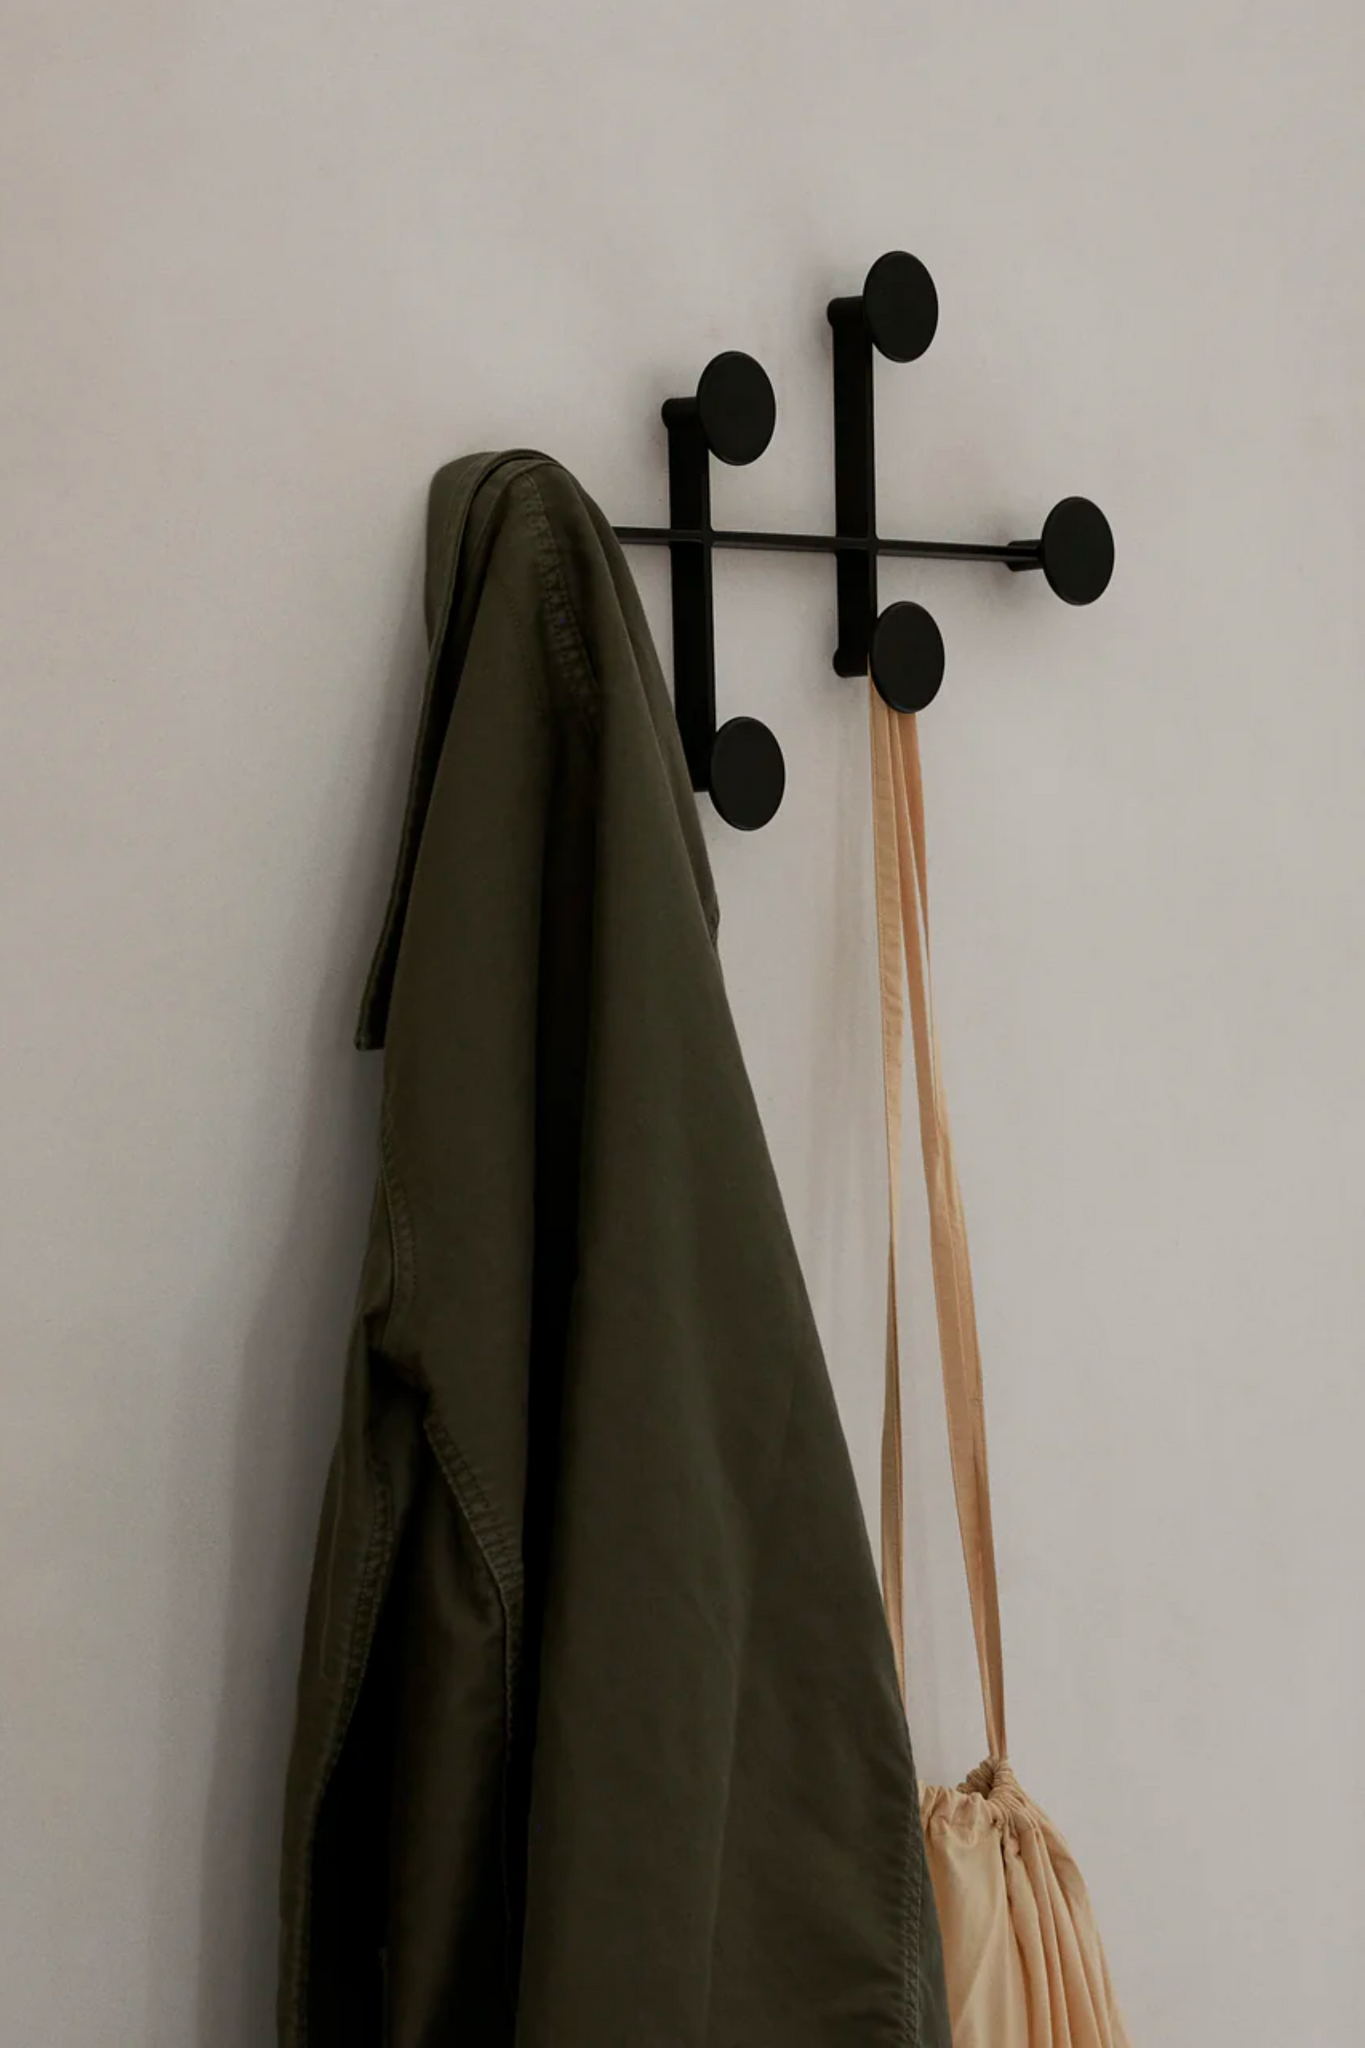 Afteroom Coat Hanger - Large